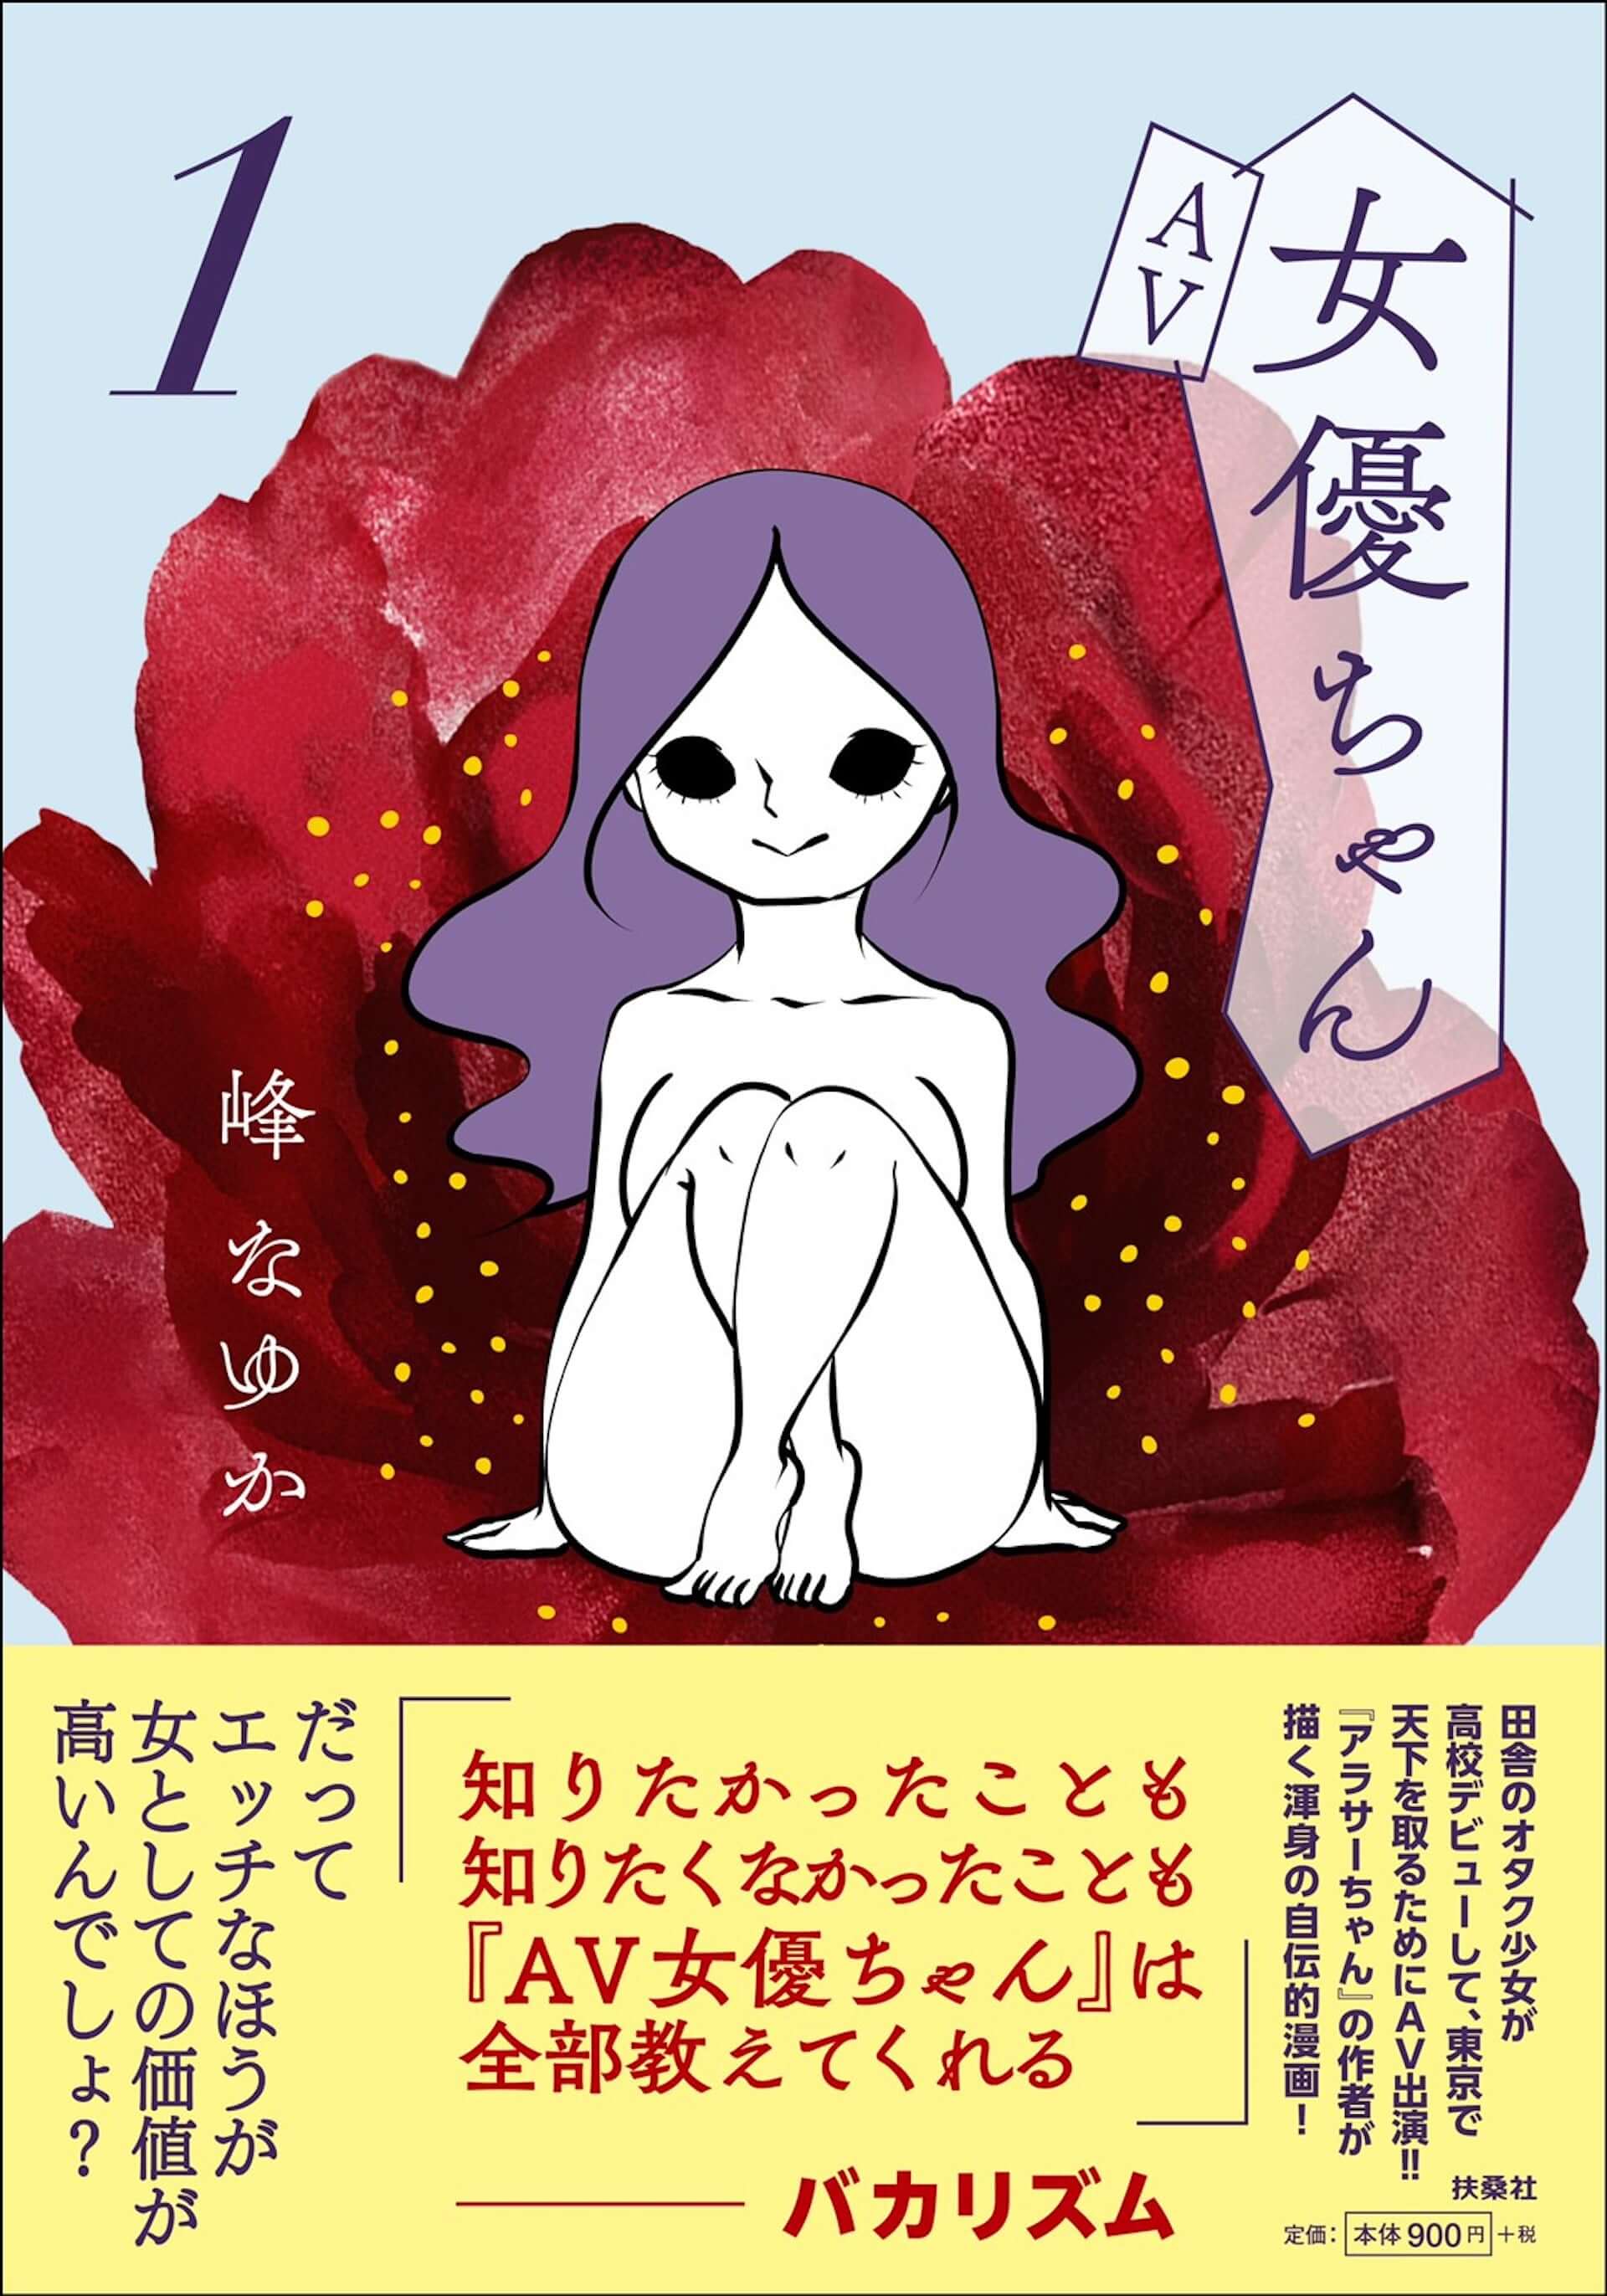 『アラサーちゃん』の峰なゆかによる自伝的漫画『AV女優ちゃん』第1巻が発売決定！帯コメントはバカリズム art201210_avjoyu-chan_1-1920x2743